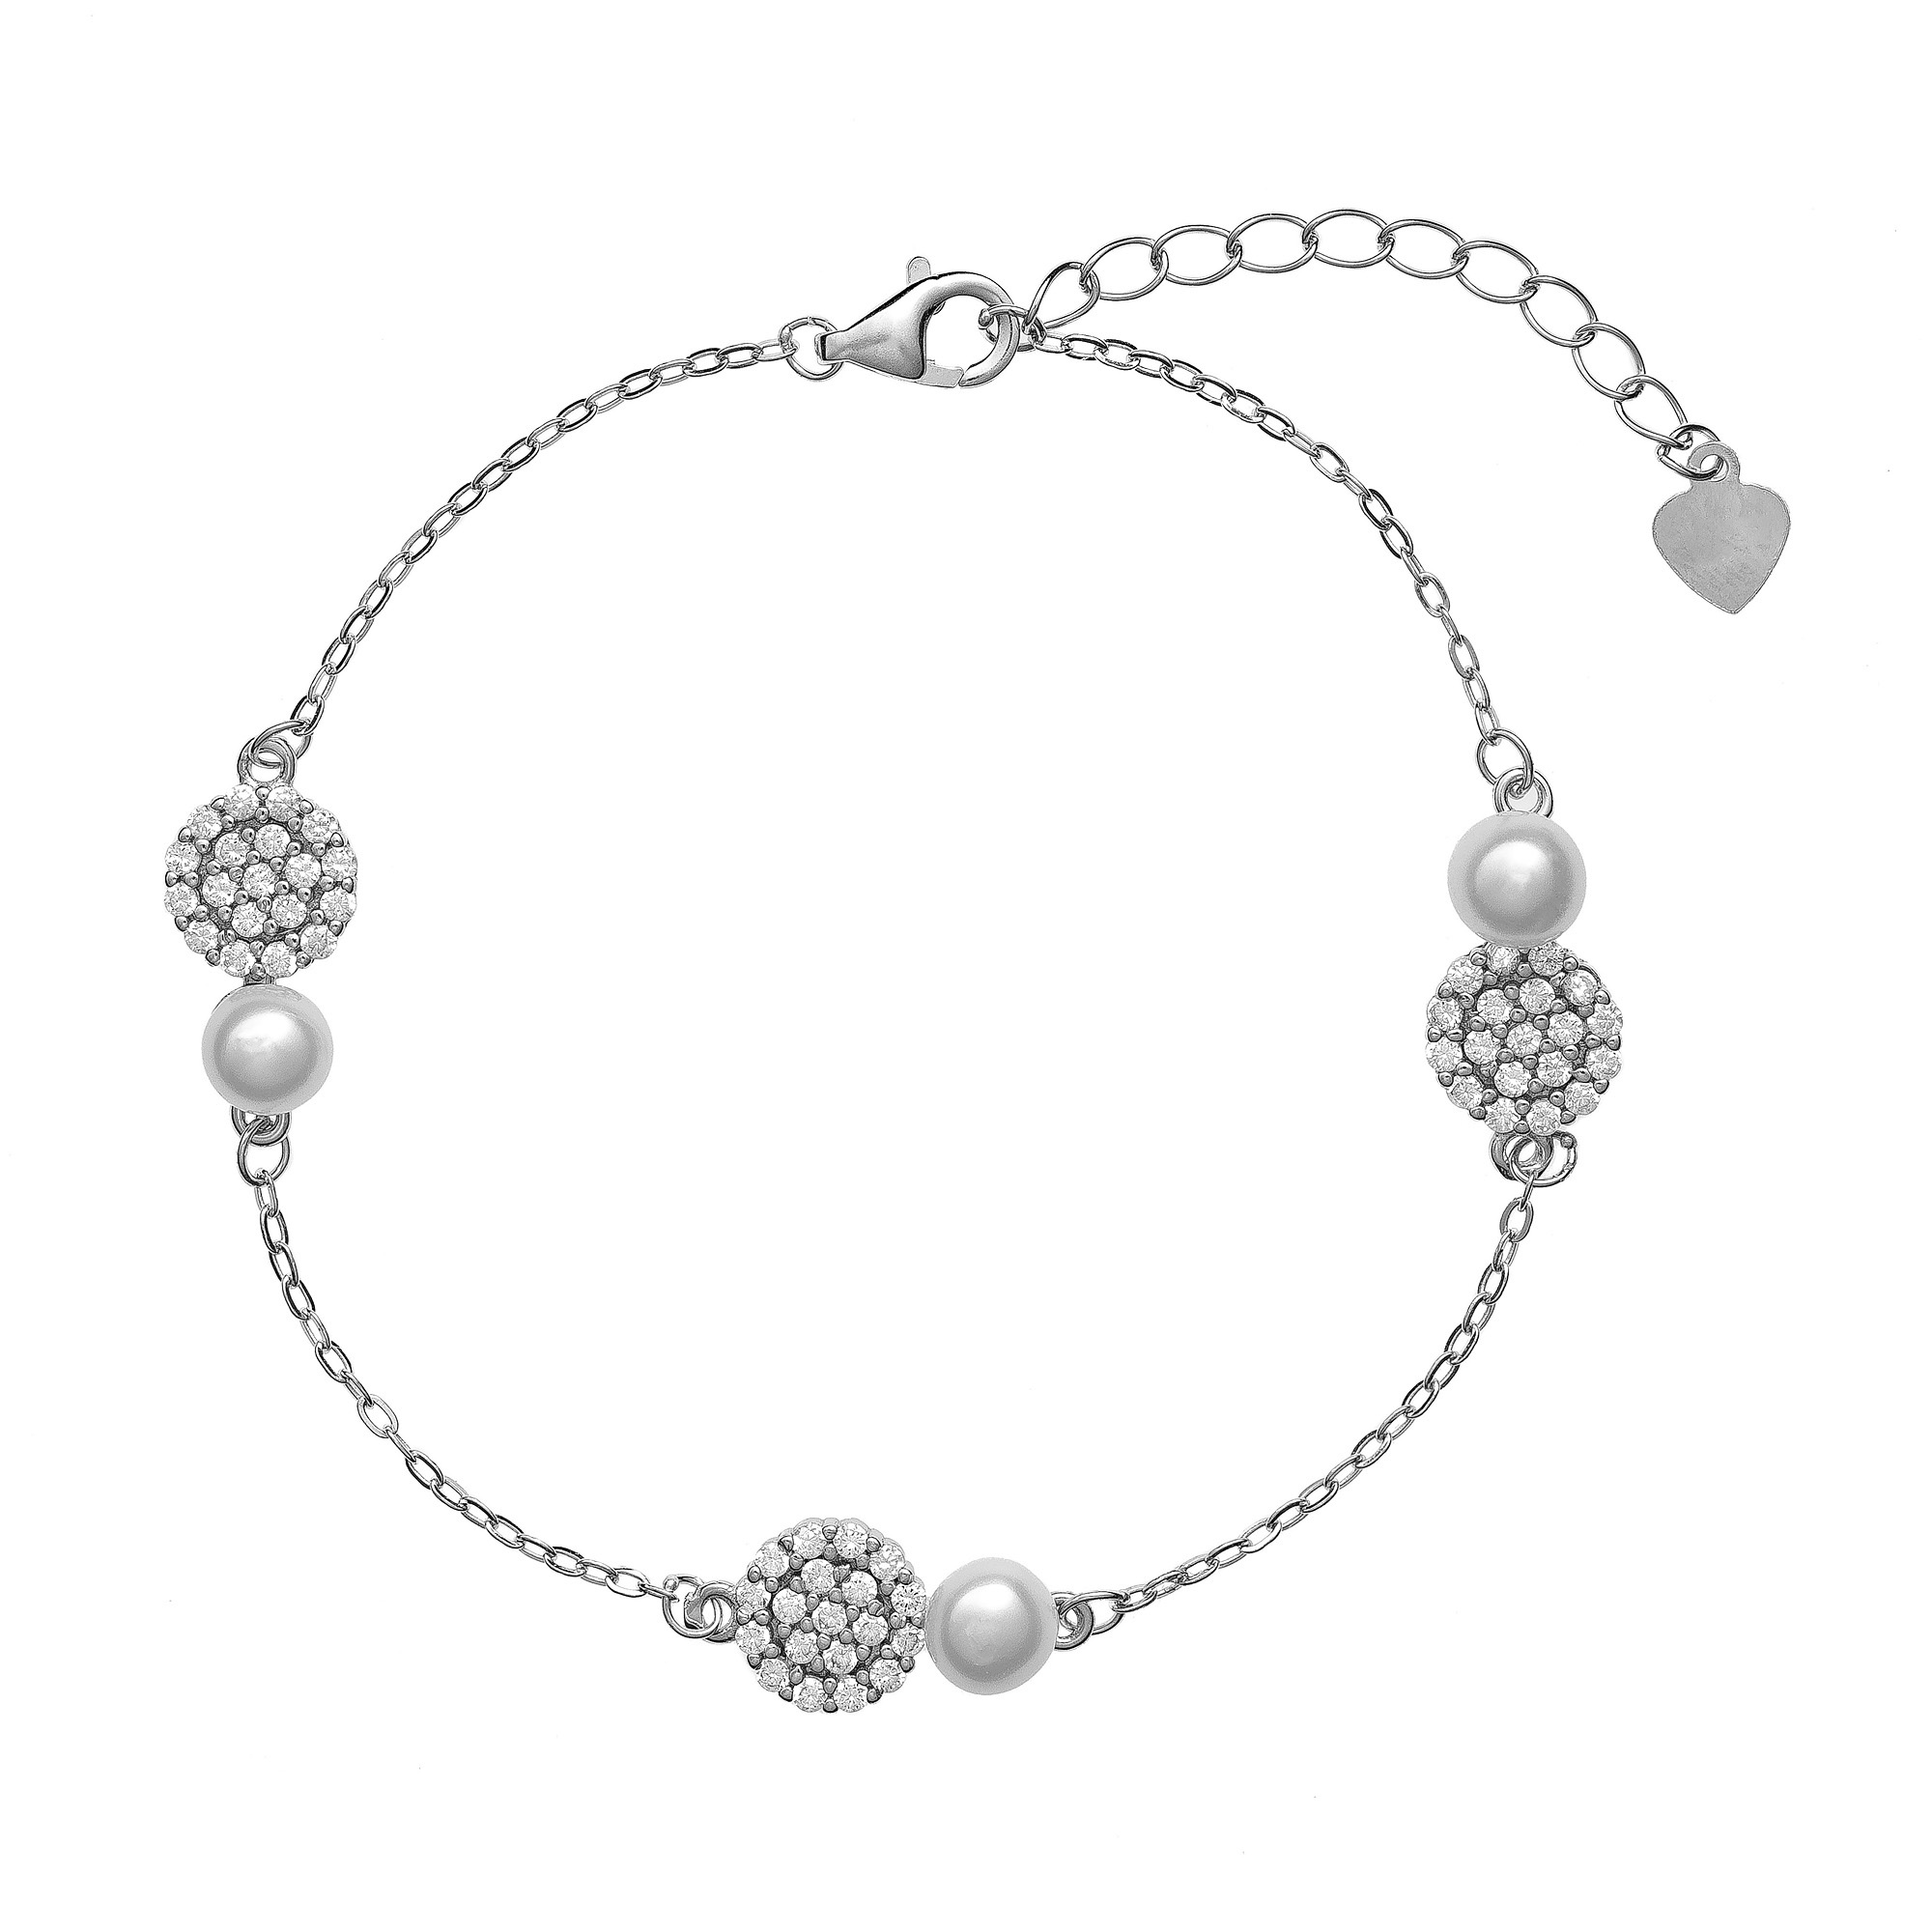 AGAIN Jewelry Strieborný náramok so zirkónmi a perlami AJNR0011